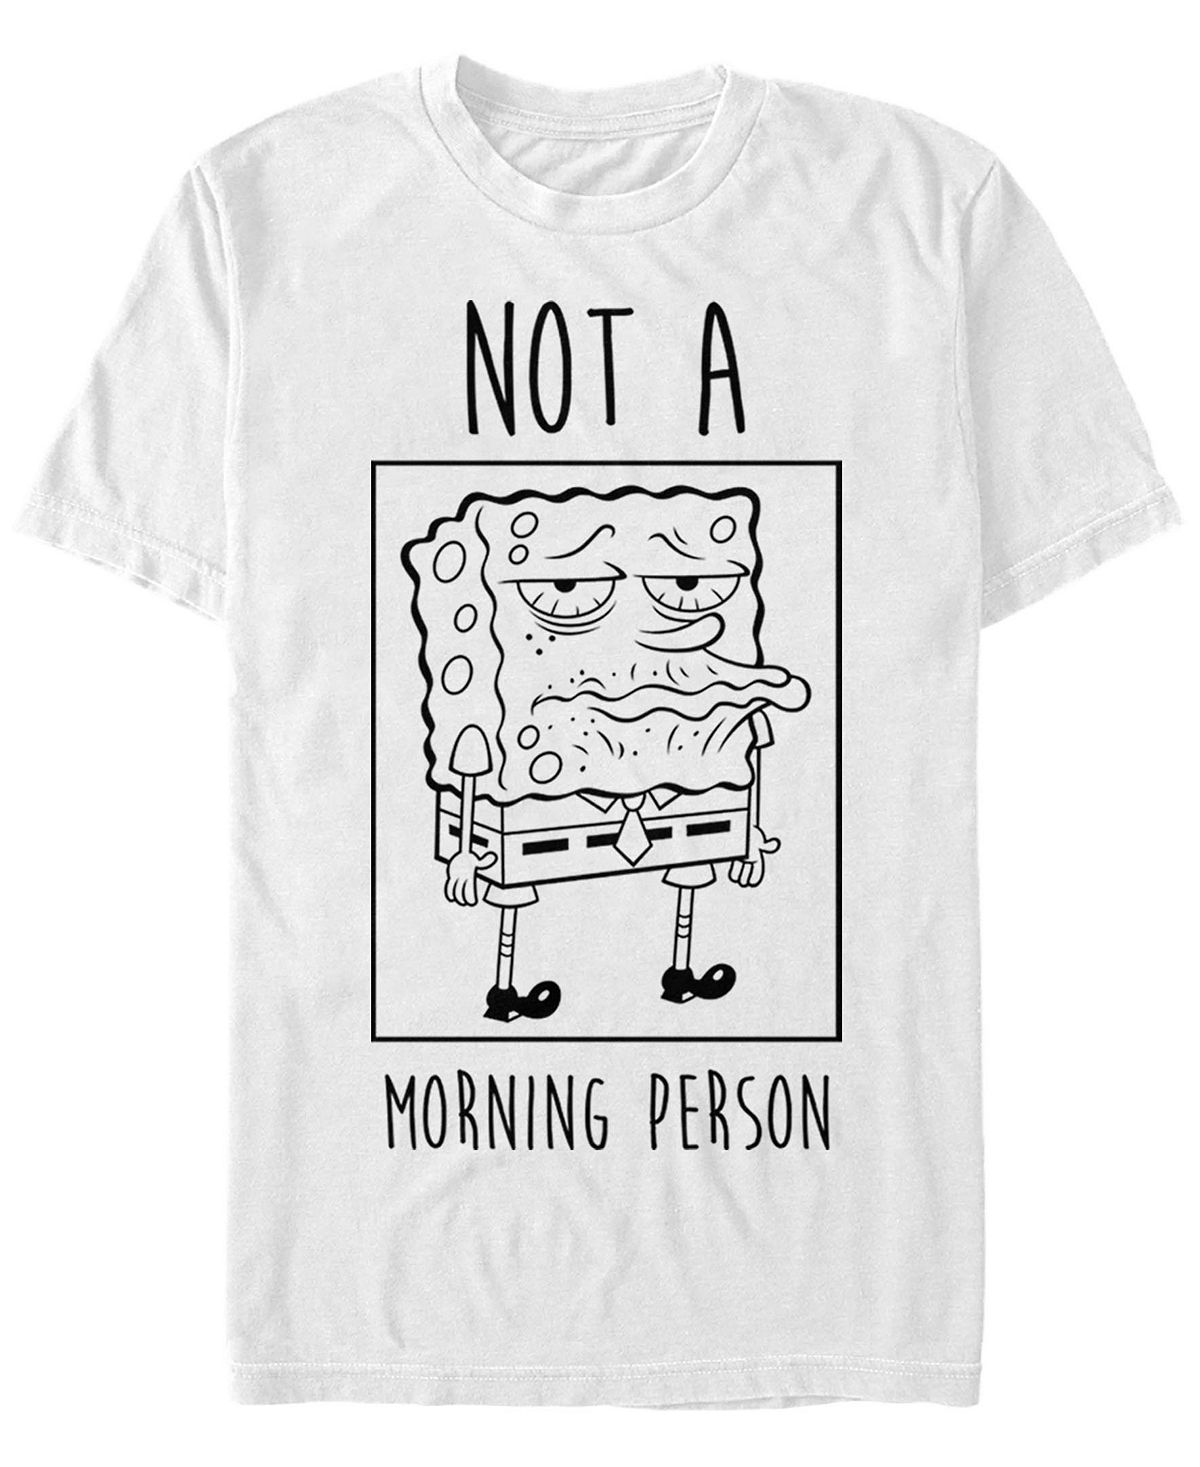 Мужская футболка not a morning person с коротким рукавом с круглым вырезом Fifth Sun, белый